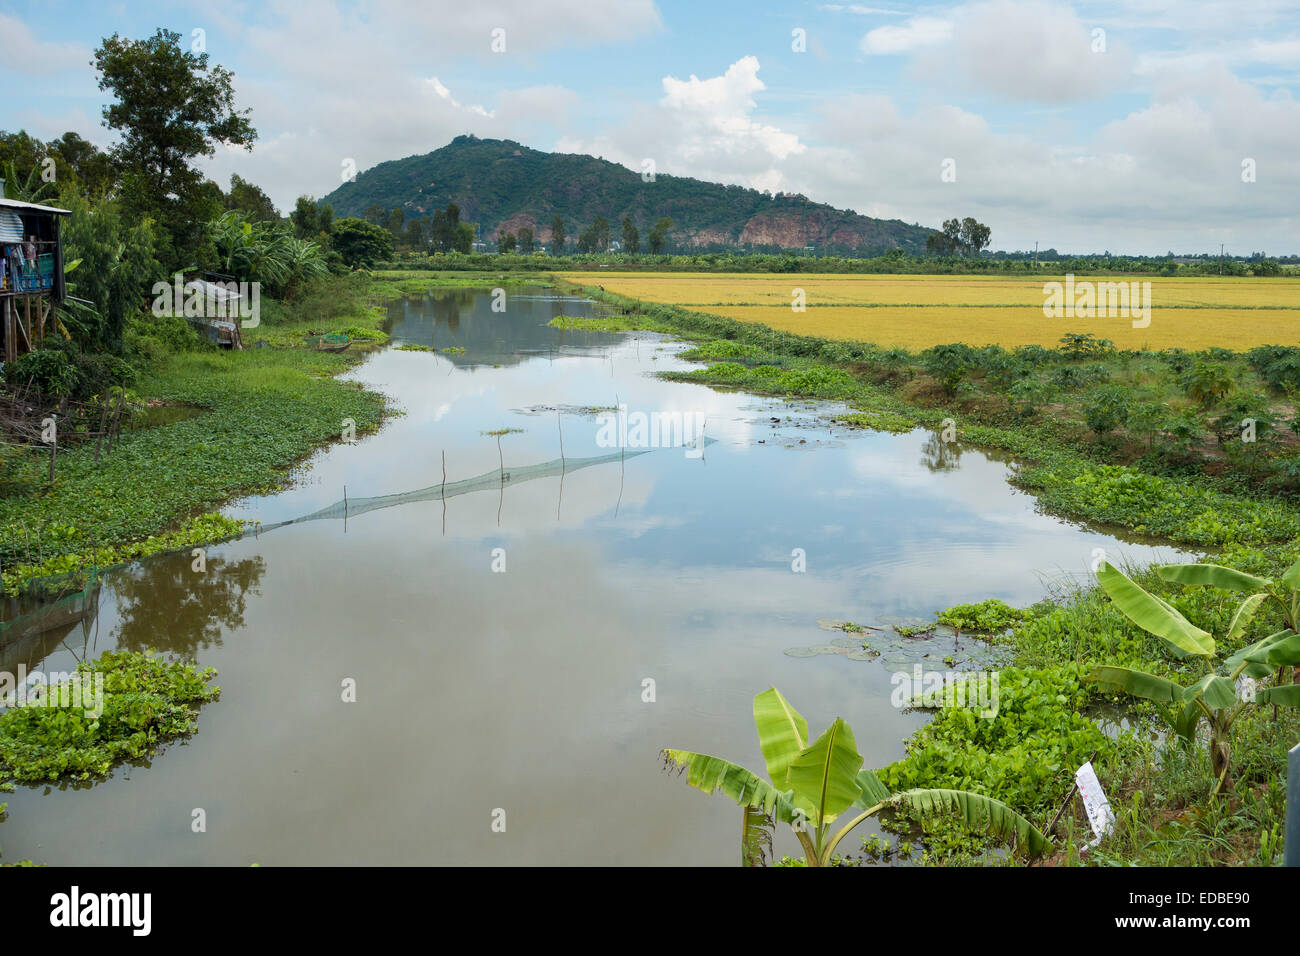 Rice paddies, Chao Doc, Vietnam Stock Photo